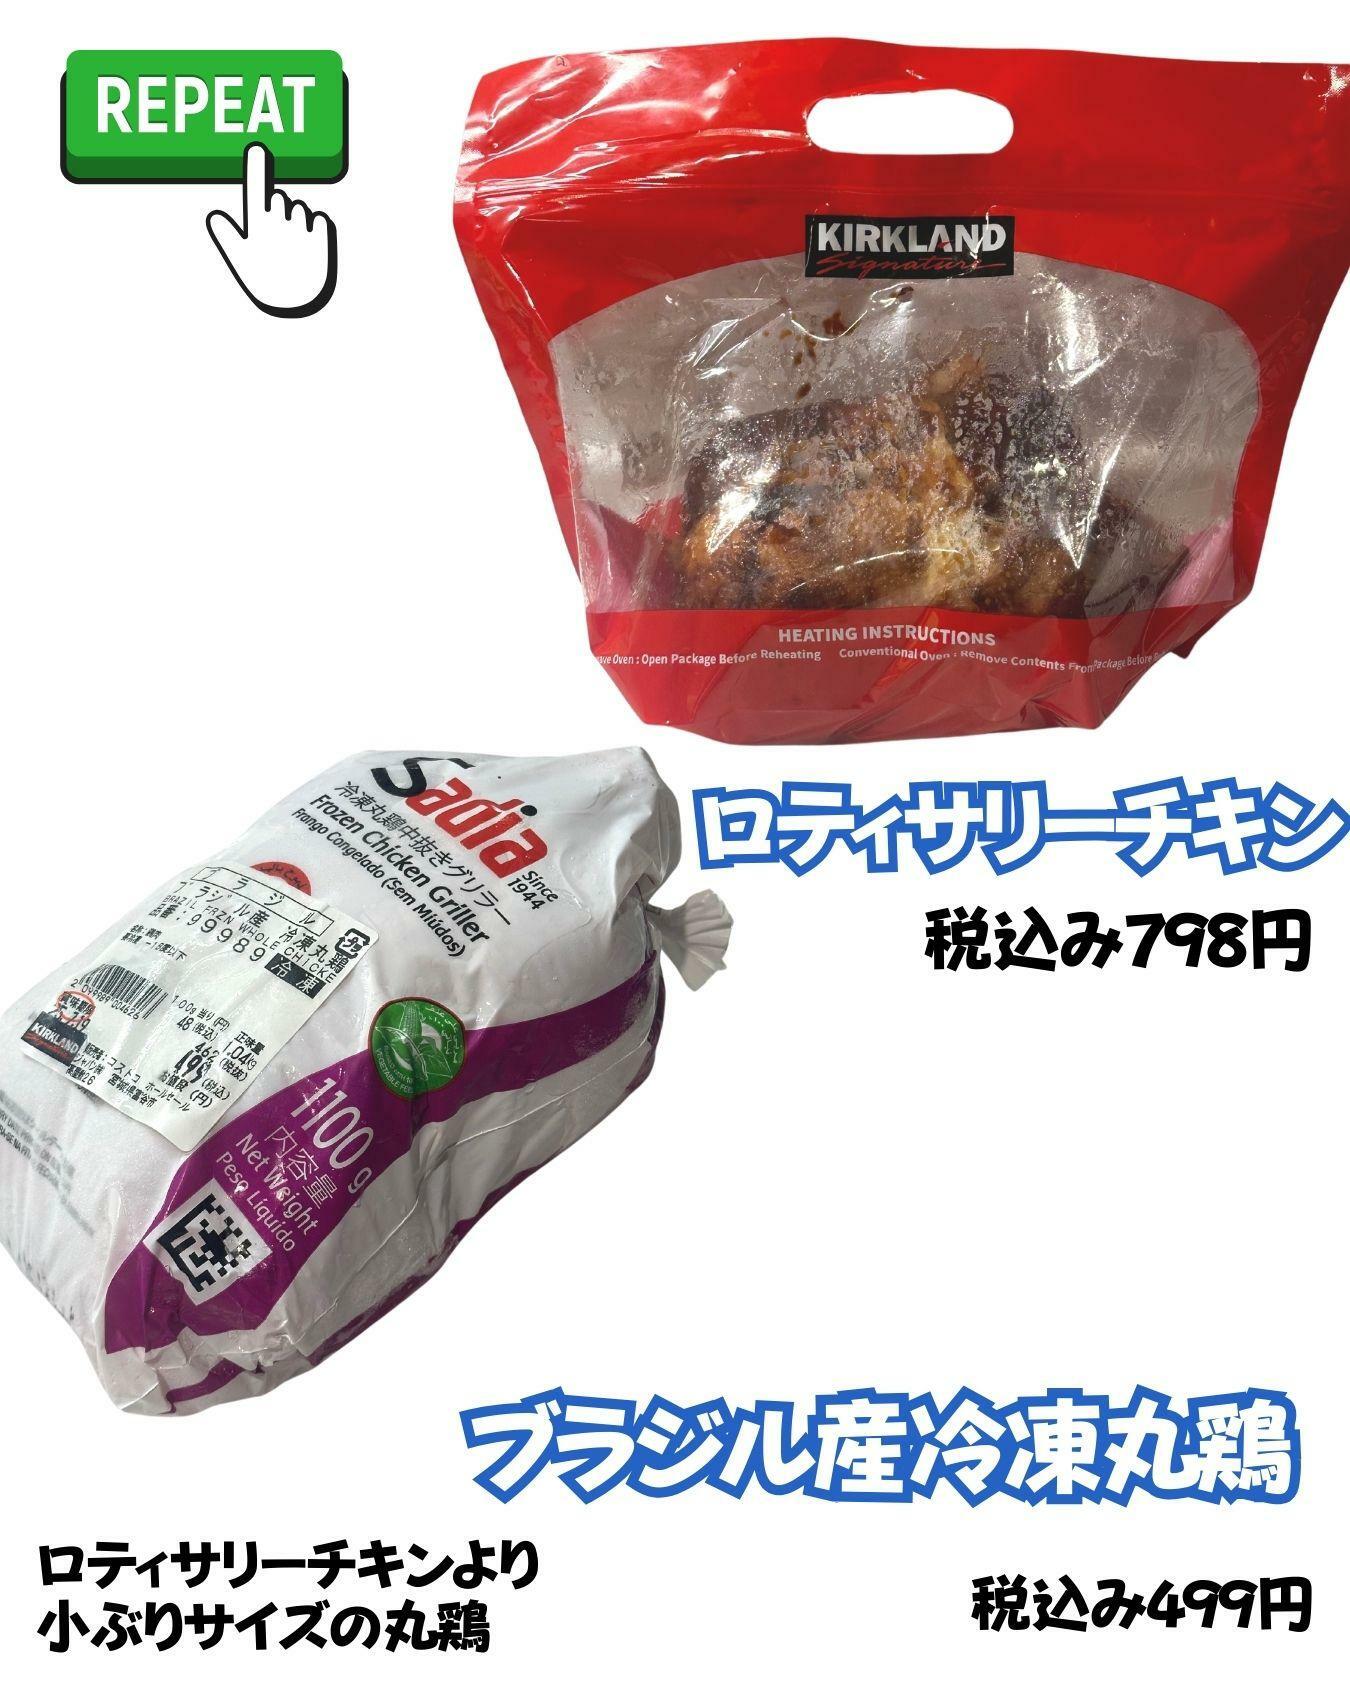 【コストコ】ロティサリーチキンとブラジル産冷凍丸鶏